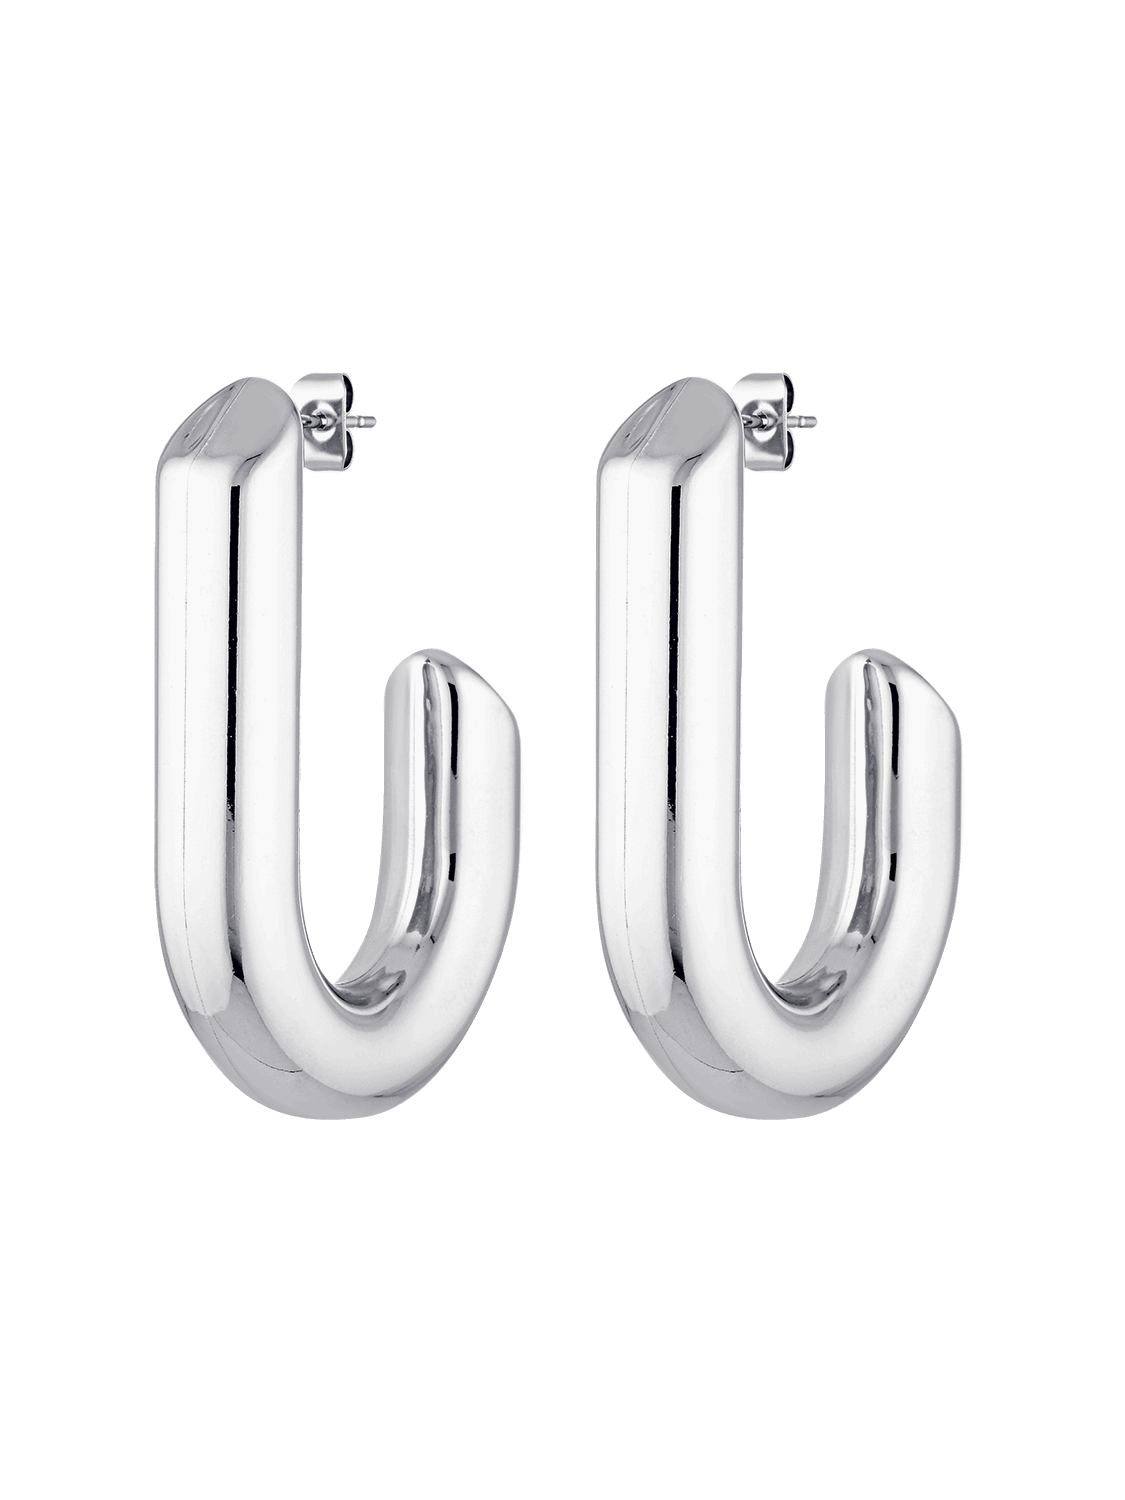 Statement earrings in silver from Bixby